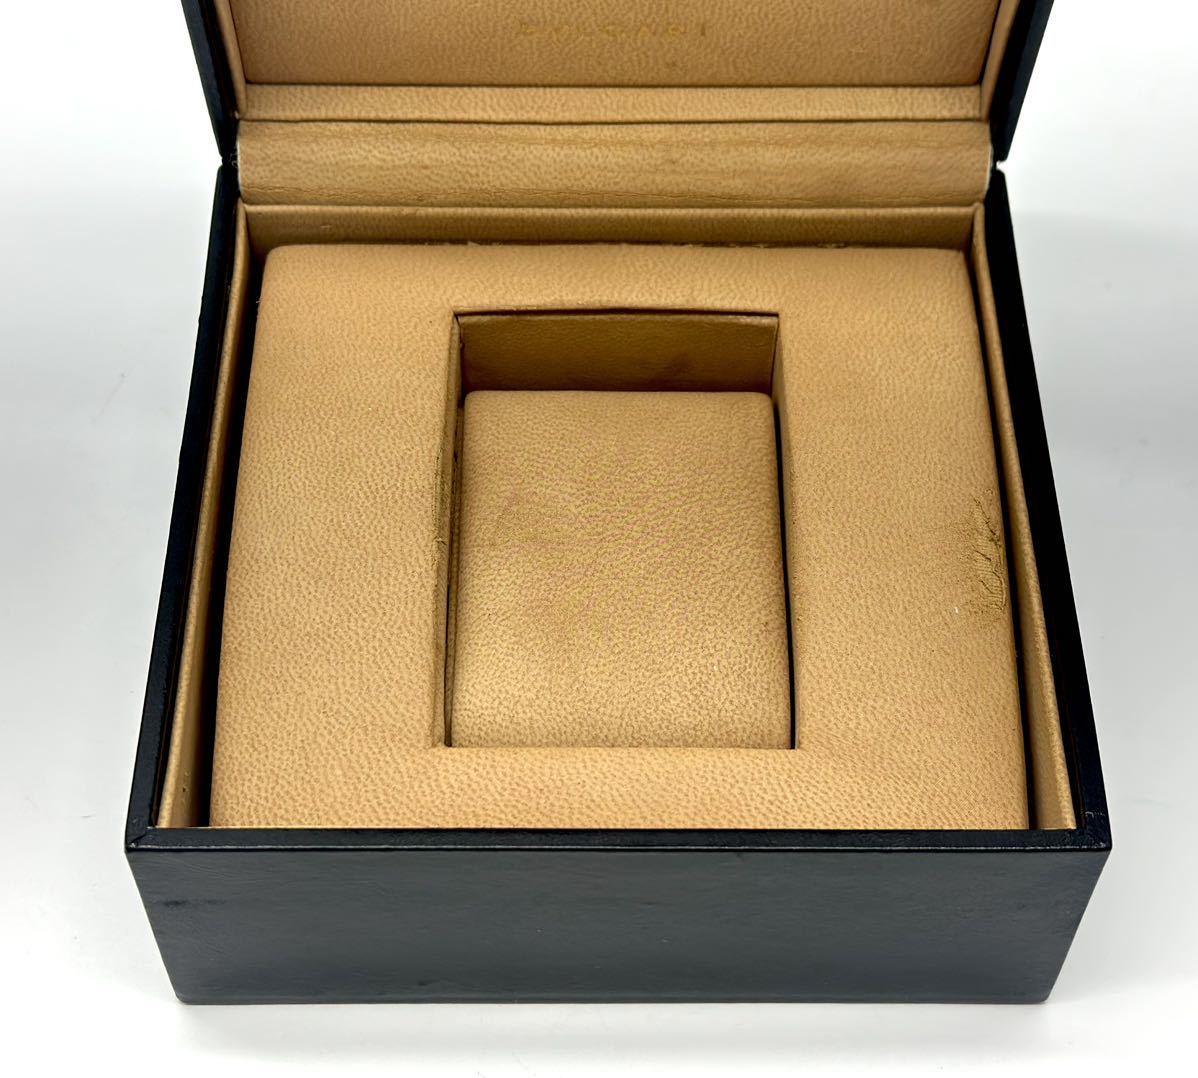 BVLGARI BVLGARY часы пустой коробка наручные часы часы кейс для часов кейс BOX пустой коробка коробка пустой коробка # Hyogo префектура Himeji город из a2 23-651